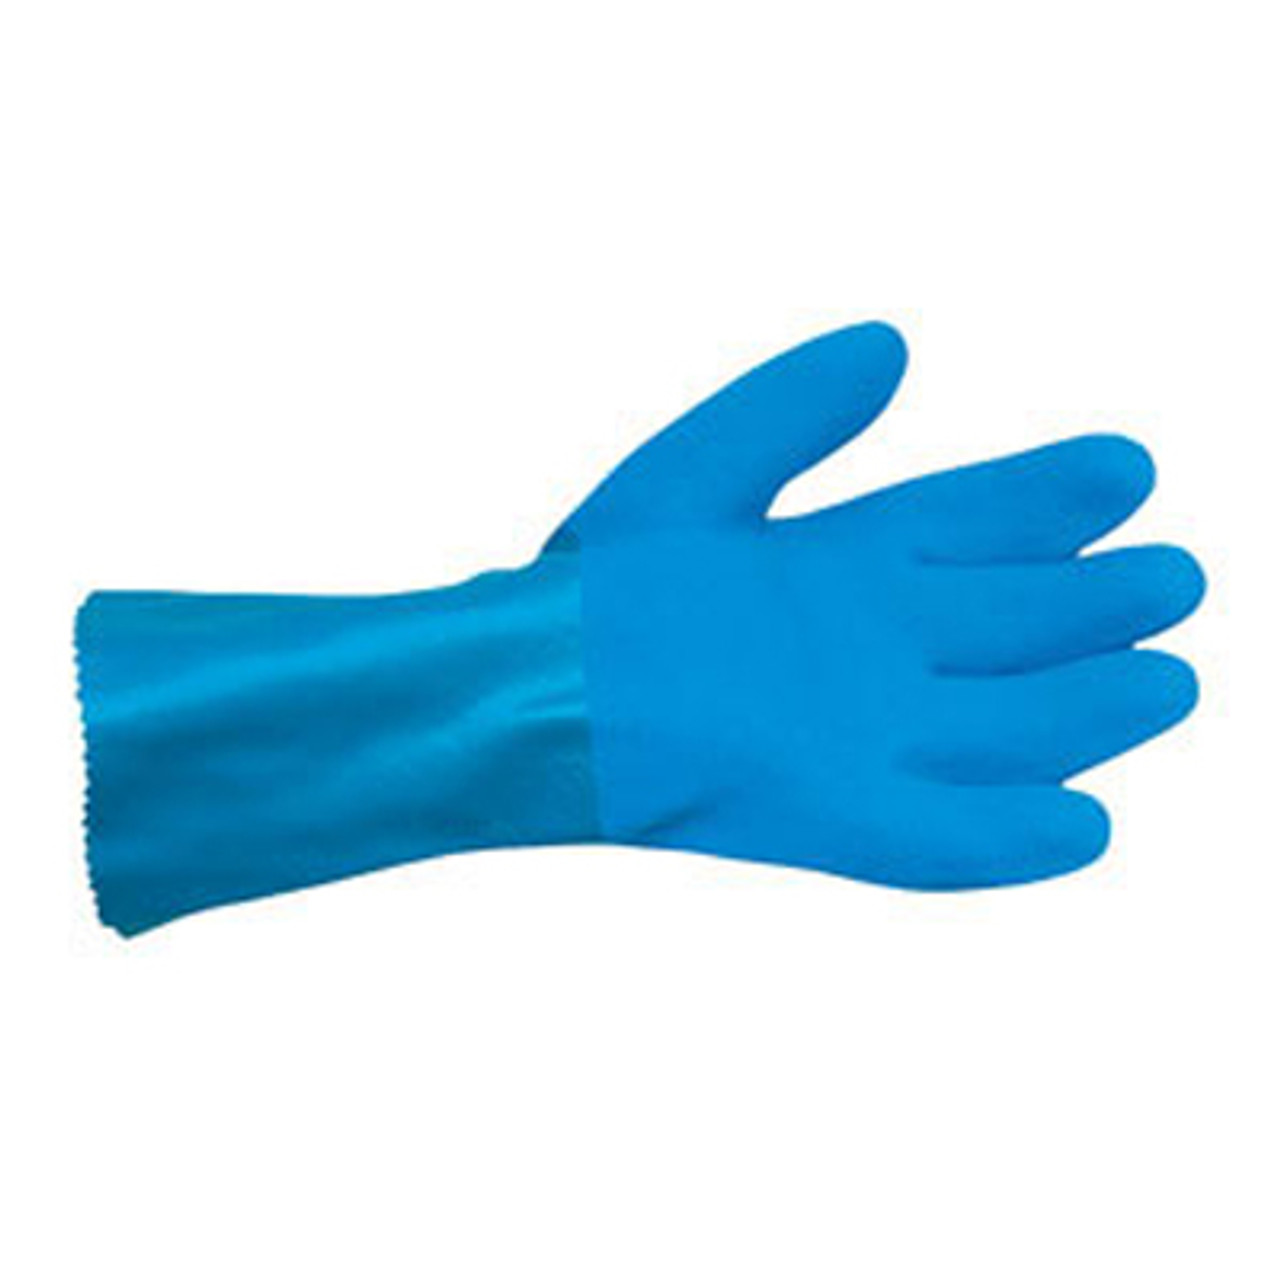 Compre guantes de trabajo de PVC SAS Safety 6553, grandes con un precio bajo todos los días y envío Venta de herramientas JB